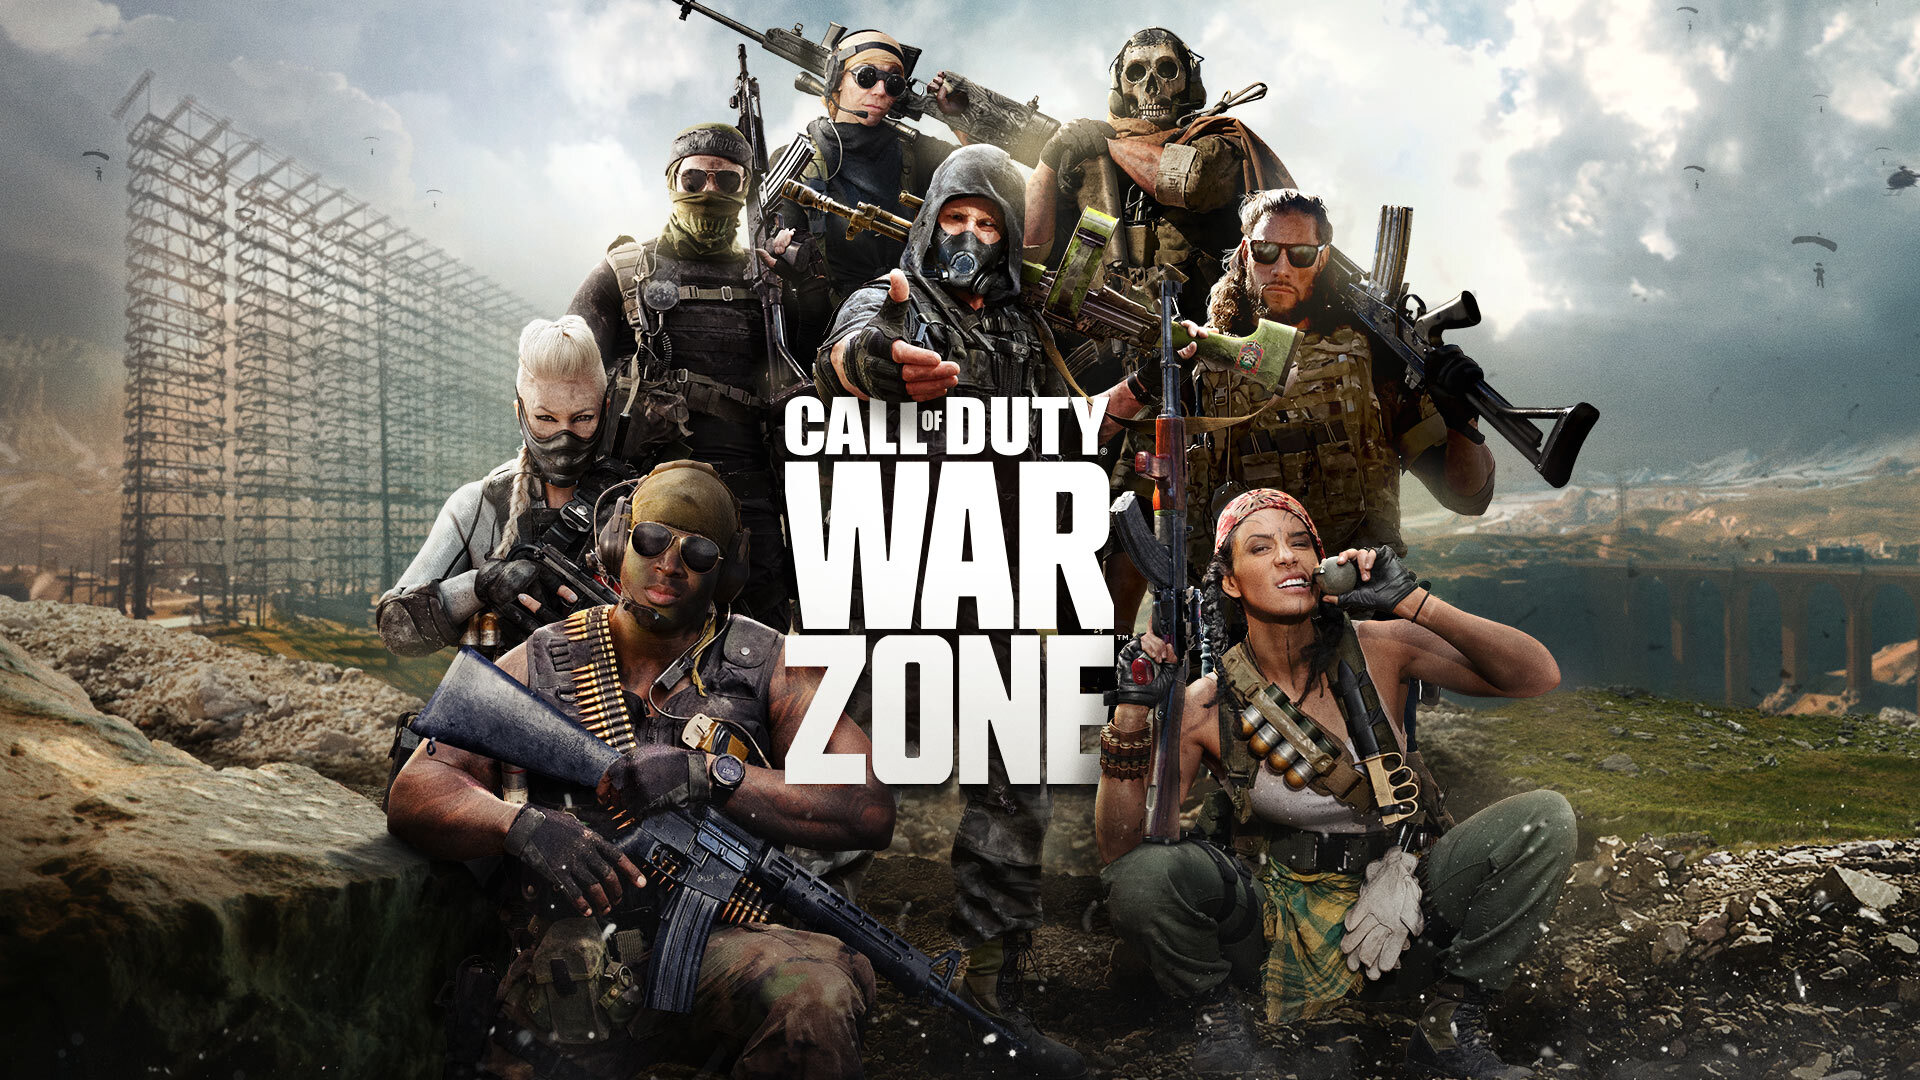 Vrachtwagenprobleem opgelost voor de solomodus van Call of Duty Warzone